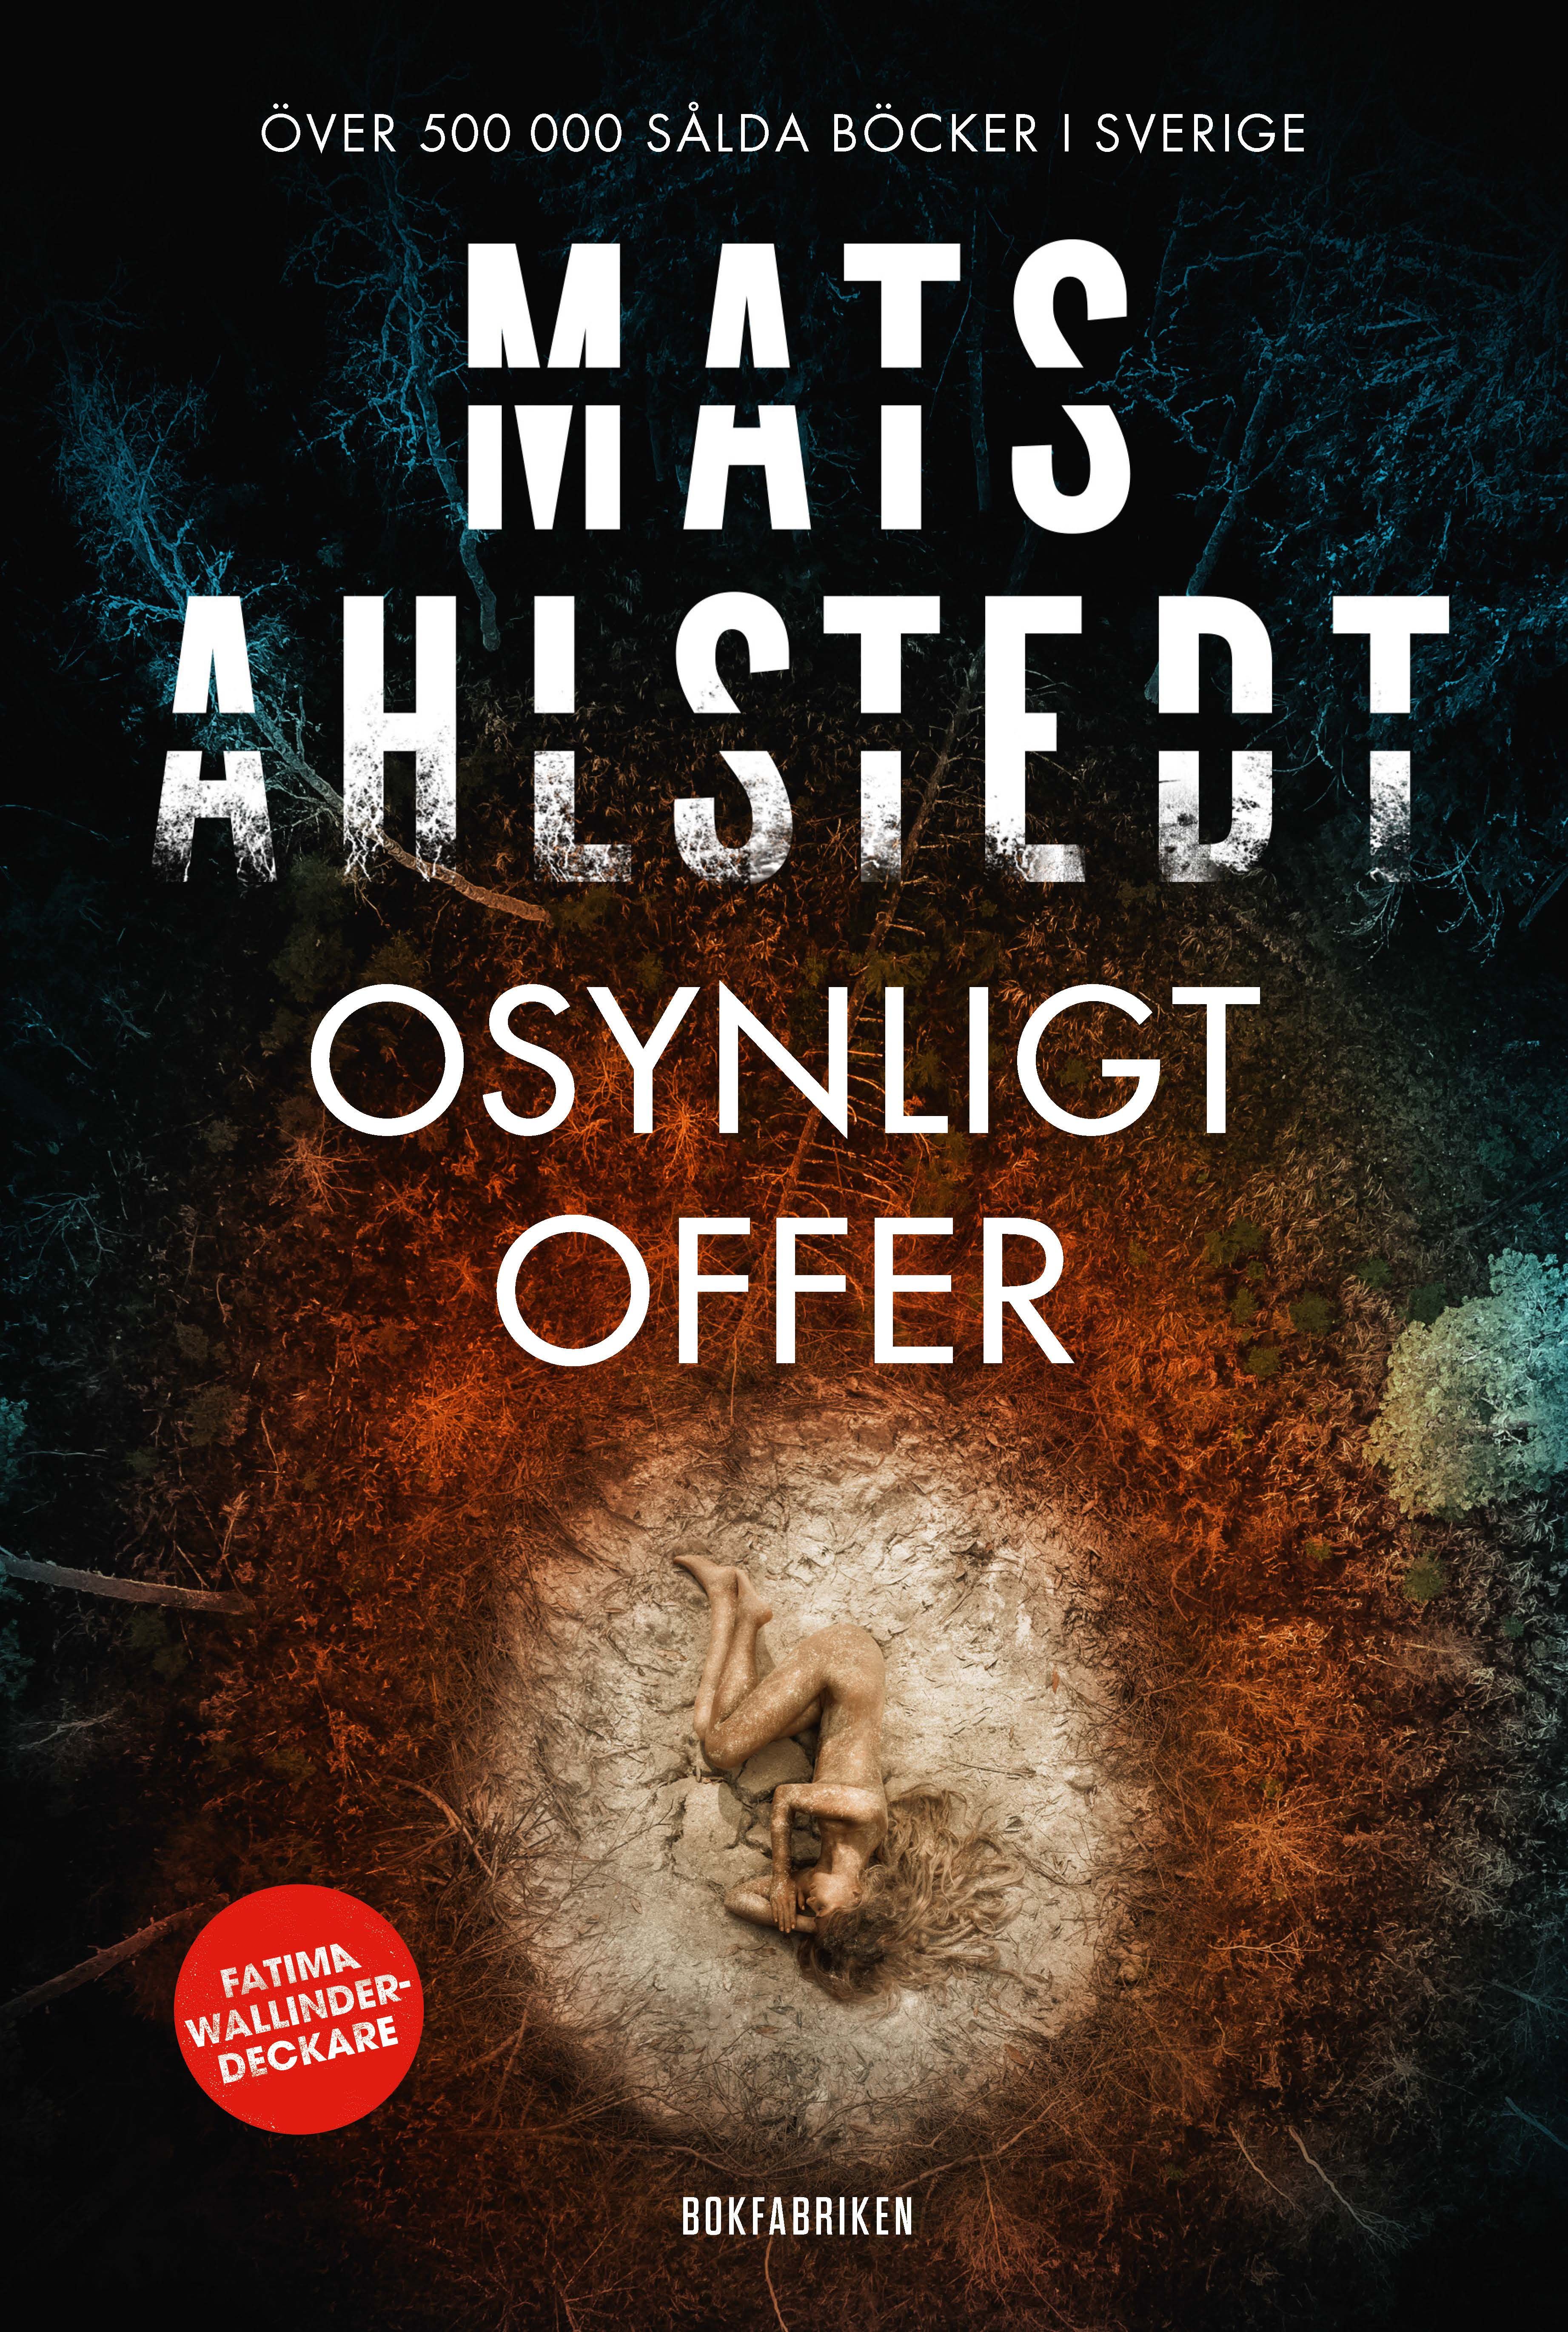 Osynligt offer, eBook by Mats Ahlstedt